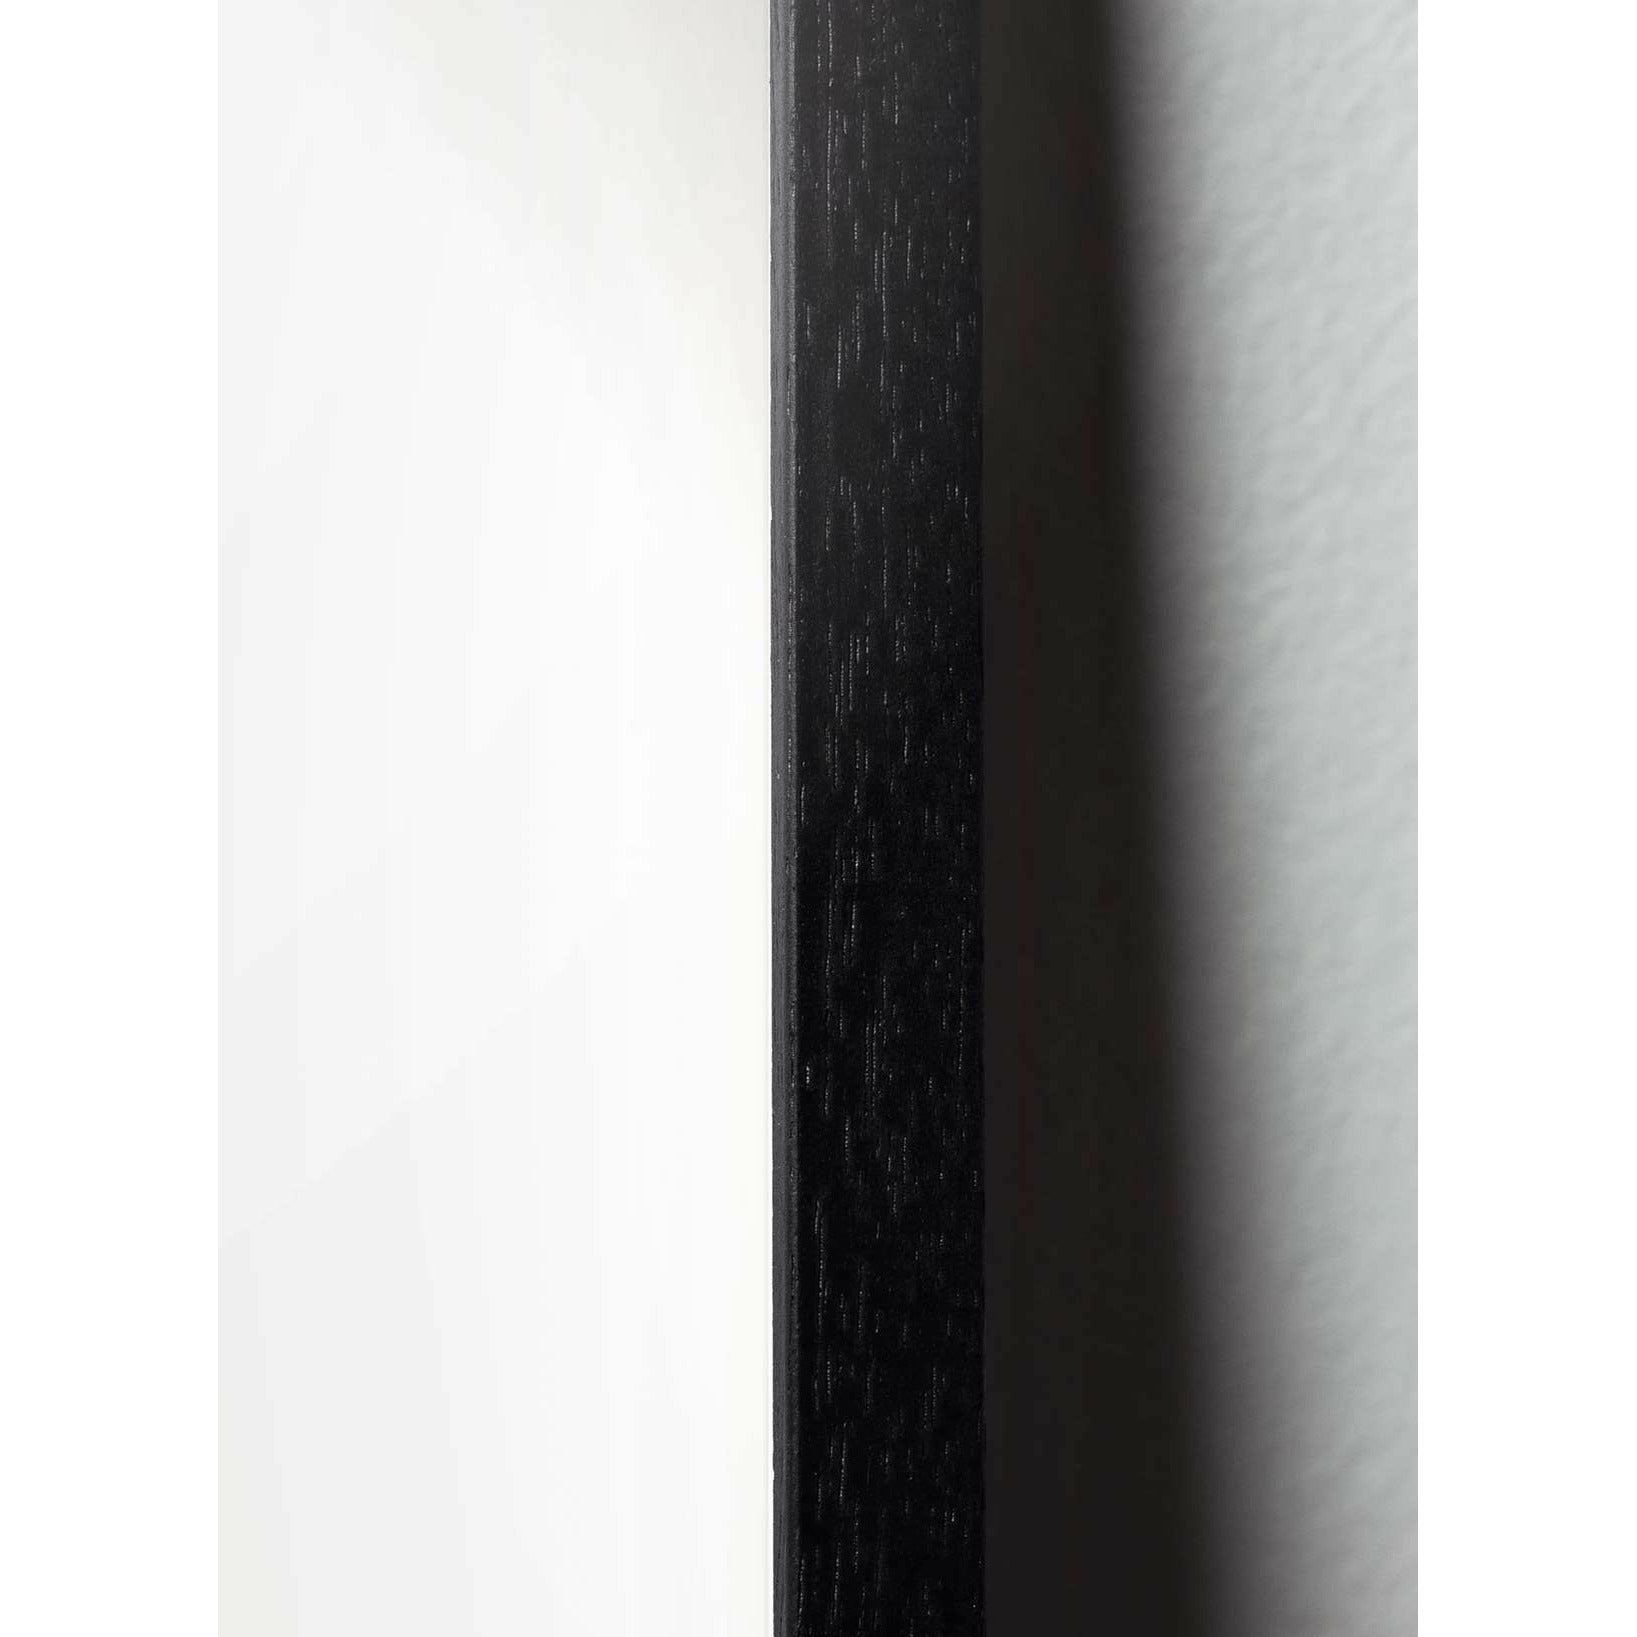 Klasický plakát mozkového medvěda, rám vyrobený z černého lakovaného dřeva 50x70 cm, pískově barevné pozadí